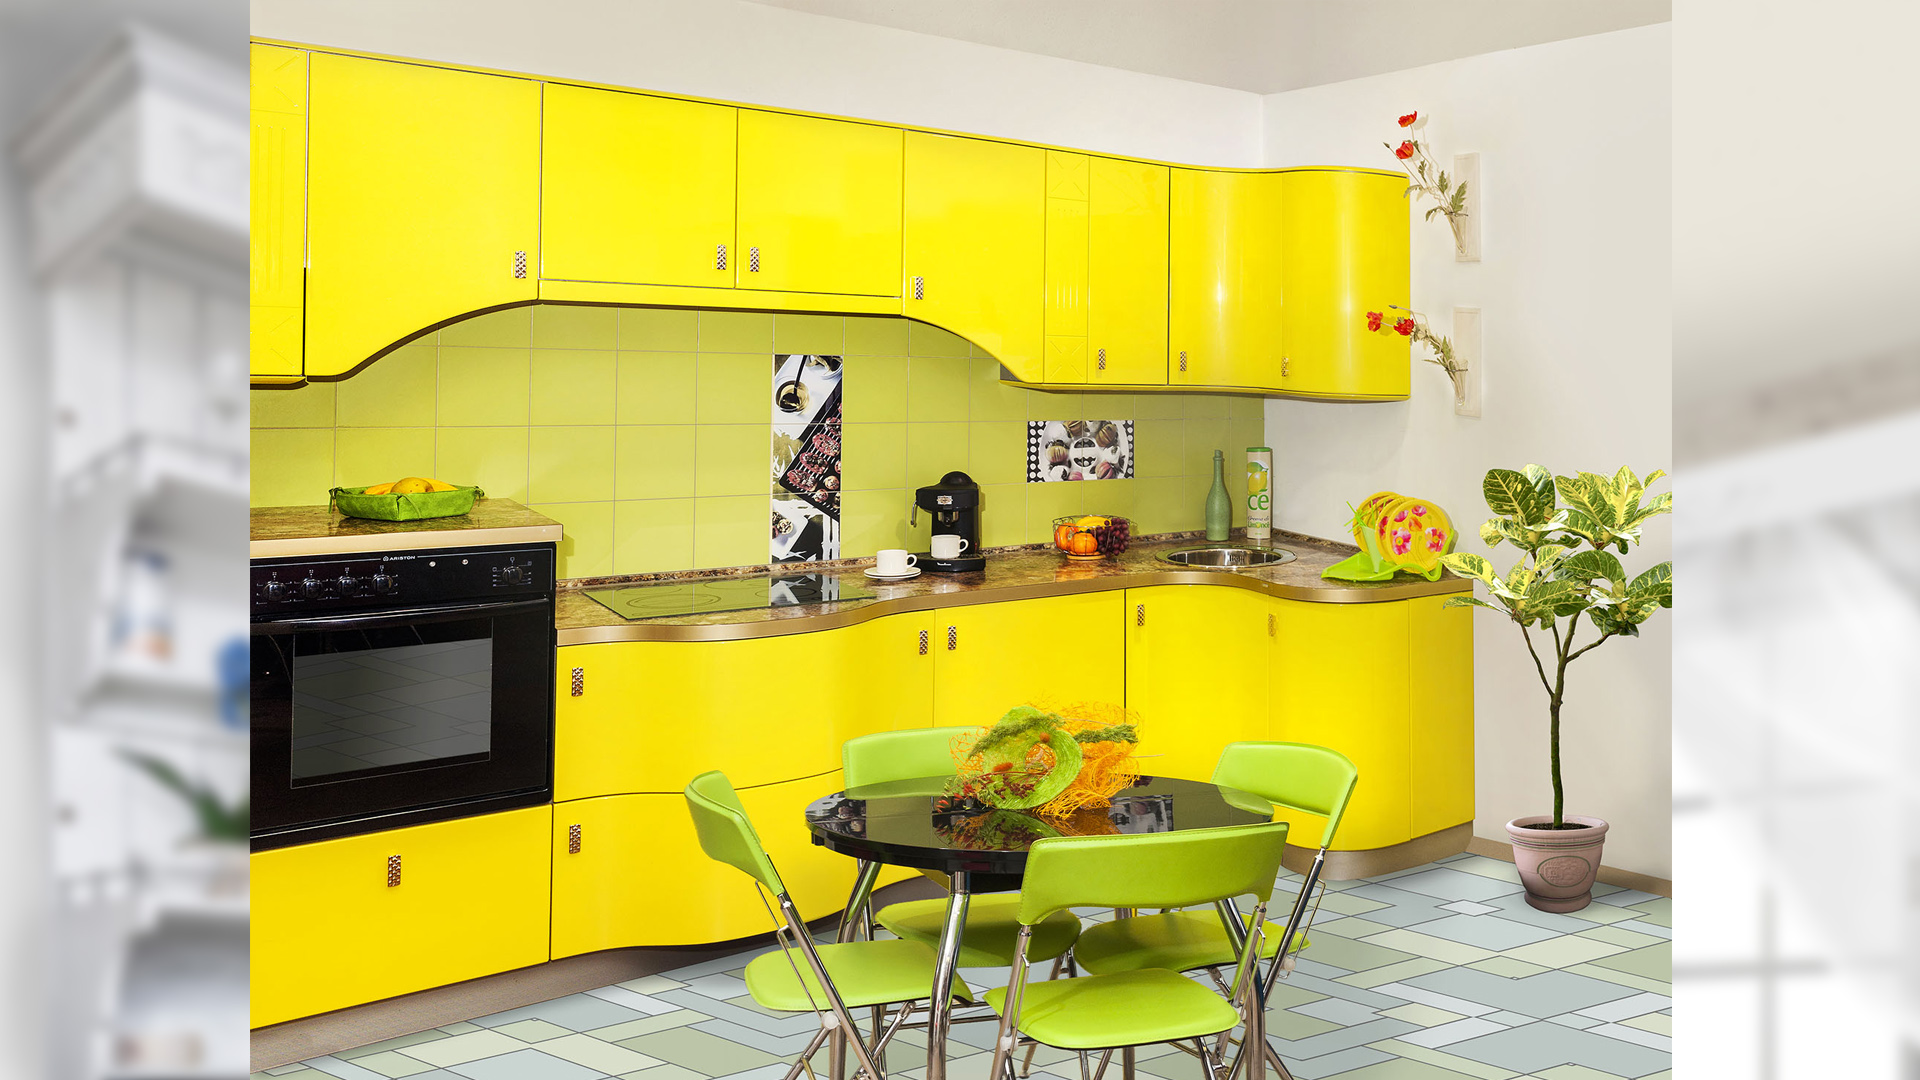 Желтая кухня в интерьере: фото с примерами кухни в желтом цвете и сочетания цветов в дизайне